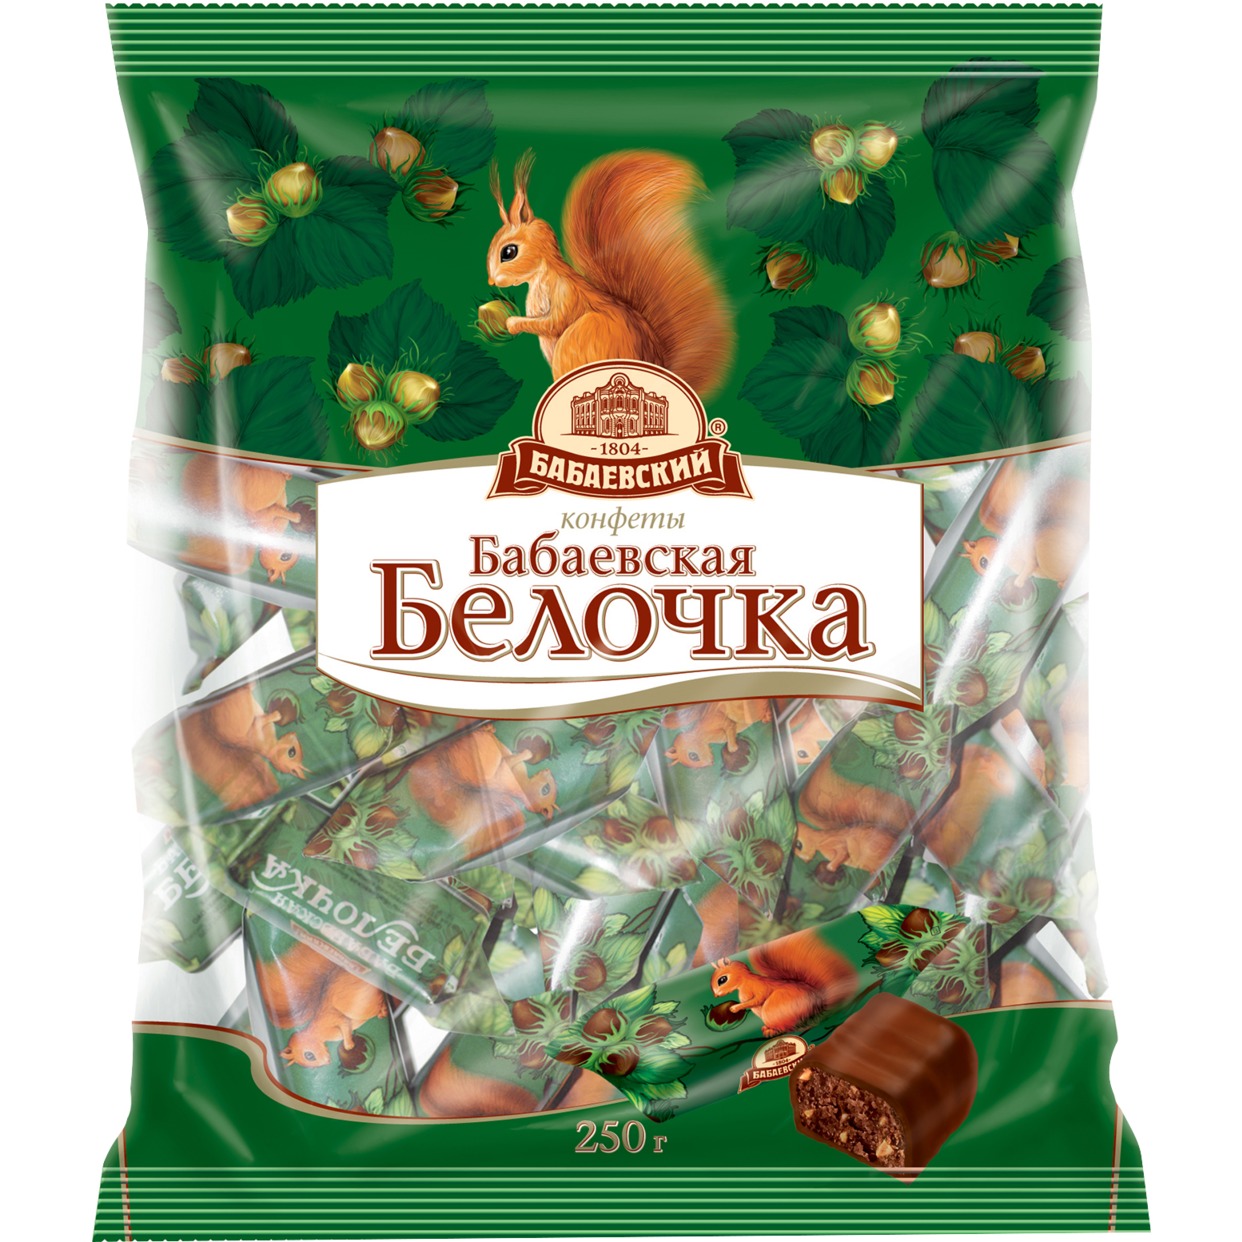 Конфеты шоколадные, Белочка, Бабаевский, 200 г по акции в Пятерочке